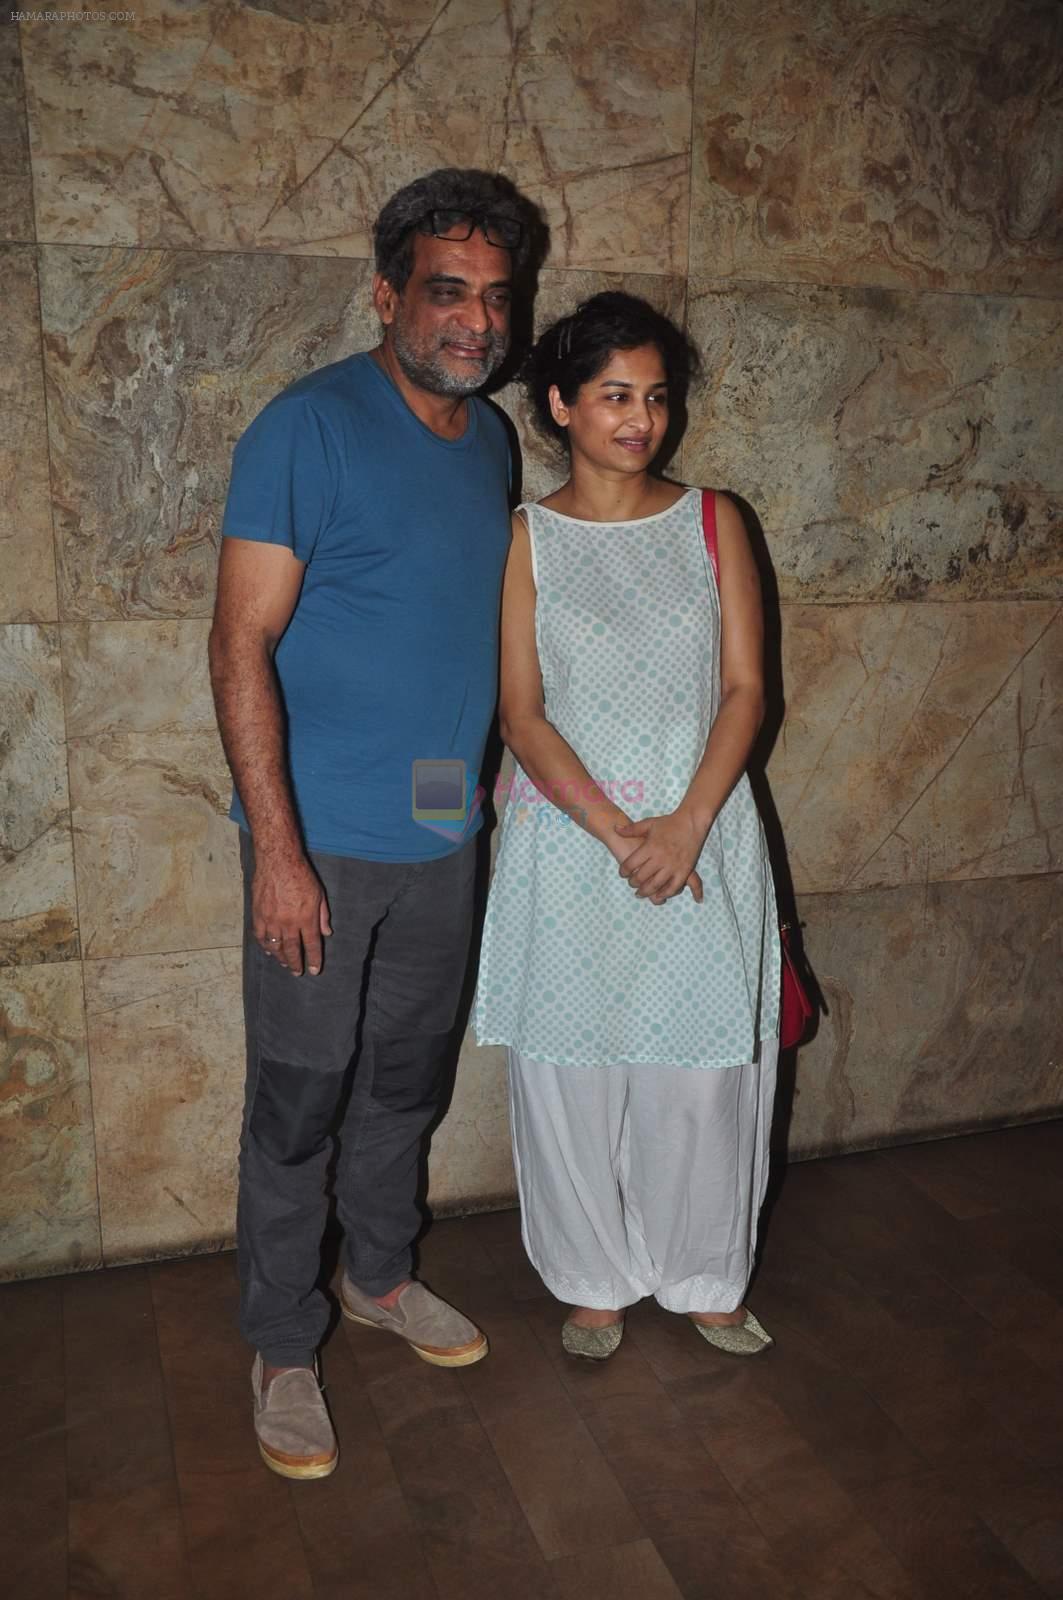 R Balki, Gauri Shinde at Tanu Weds Manu 2 screening on 19th May 2015